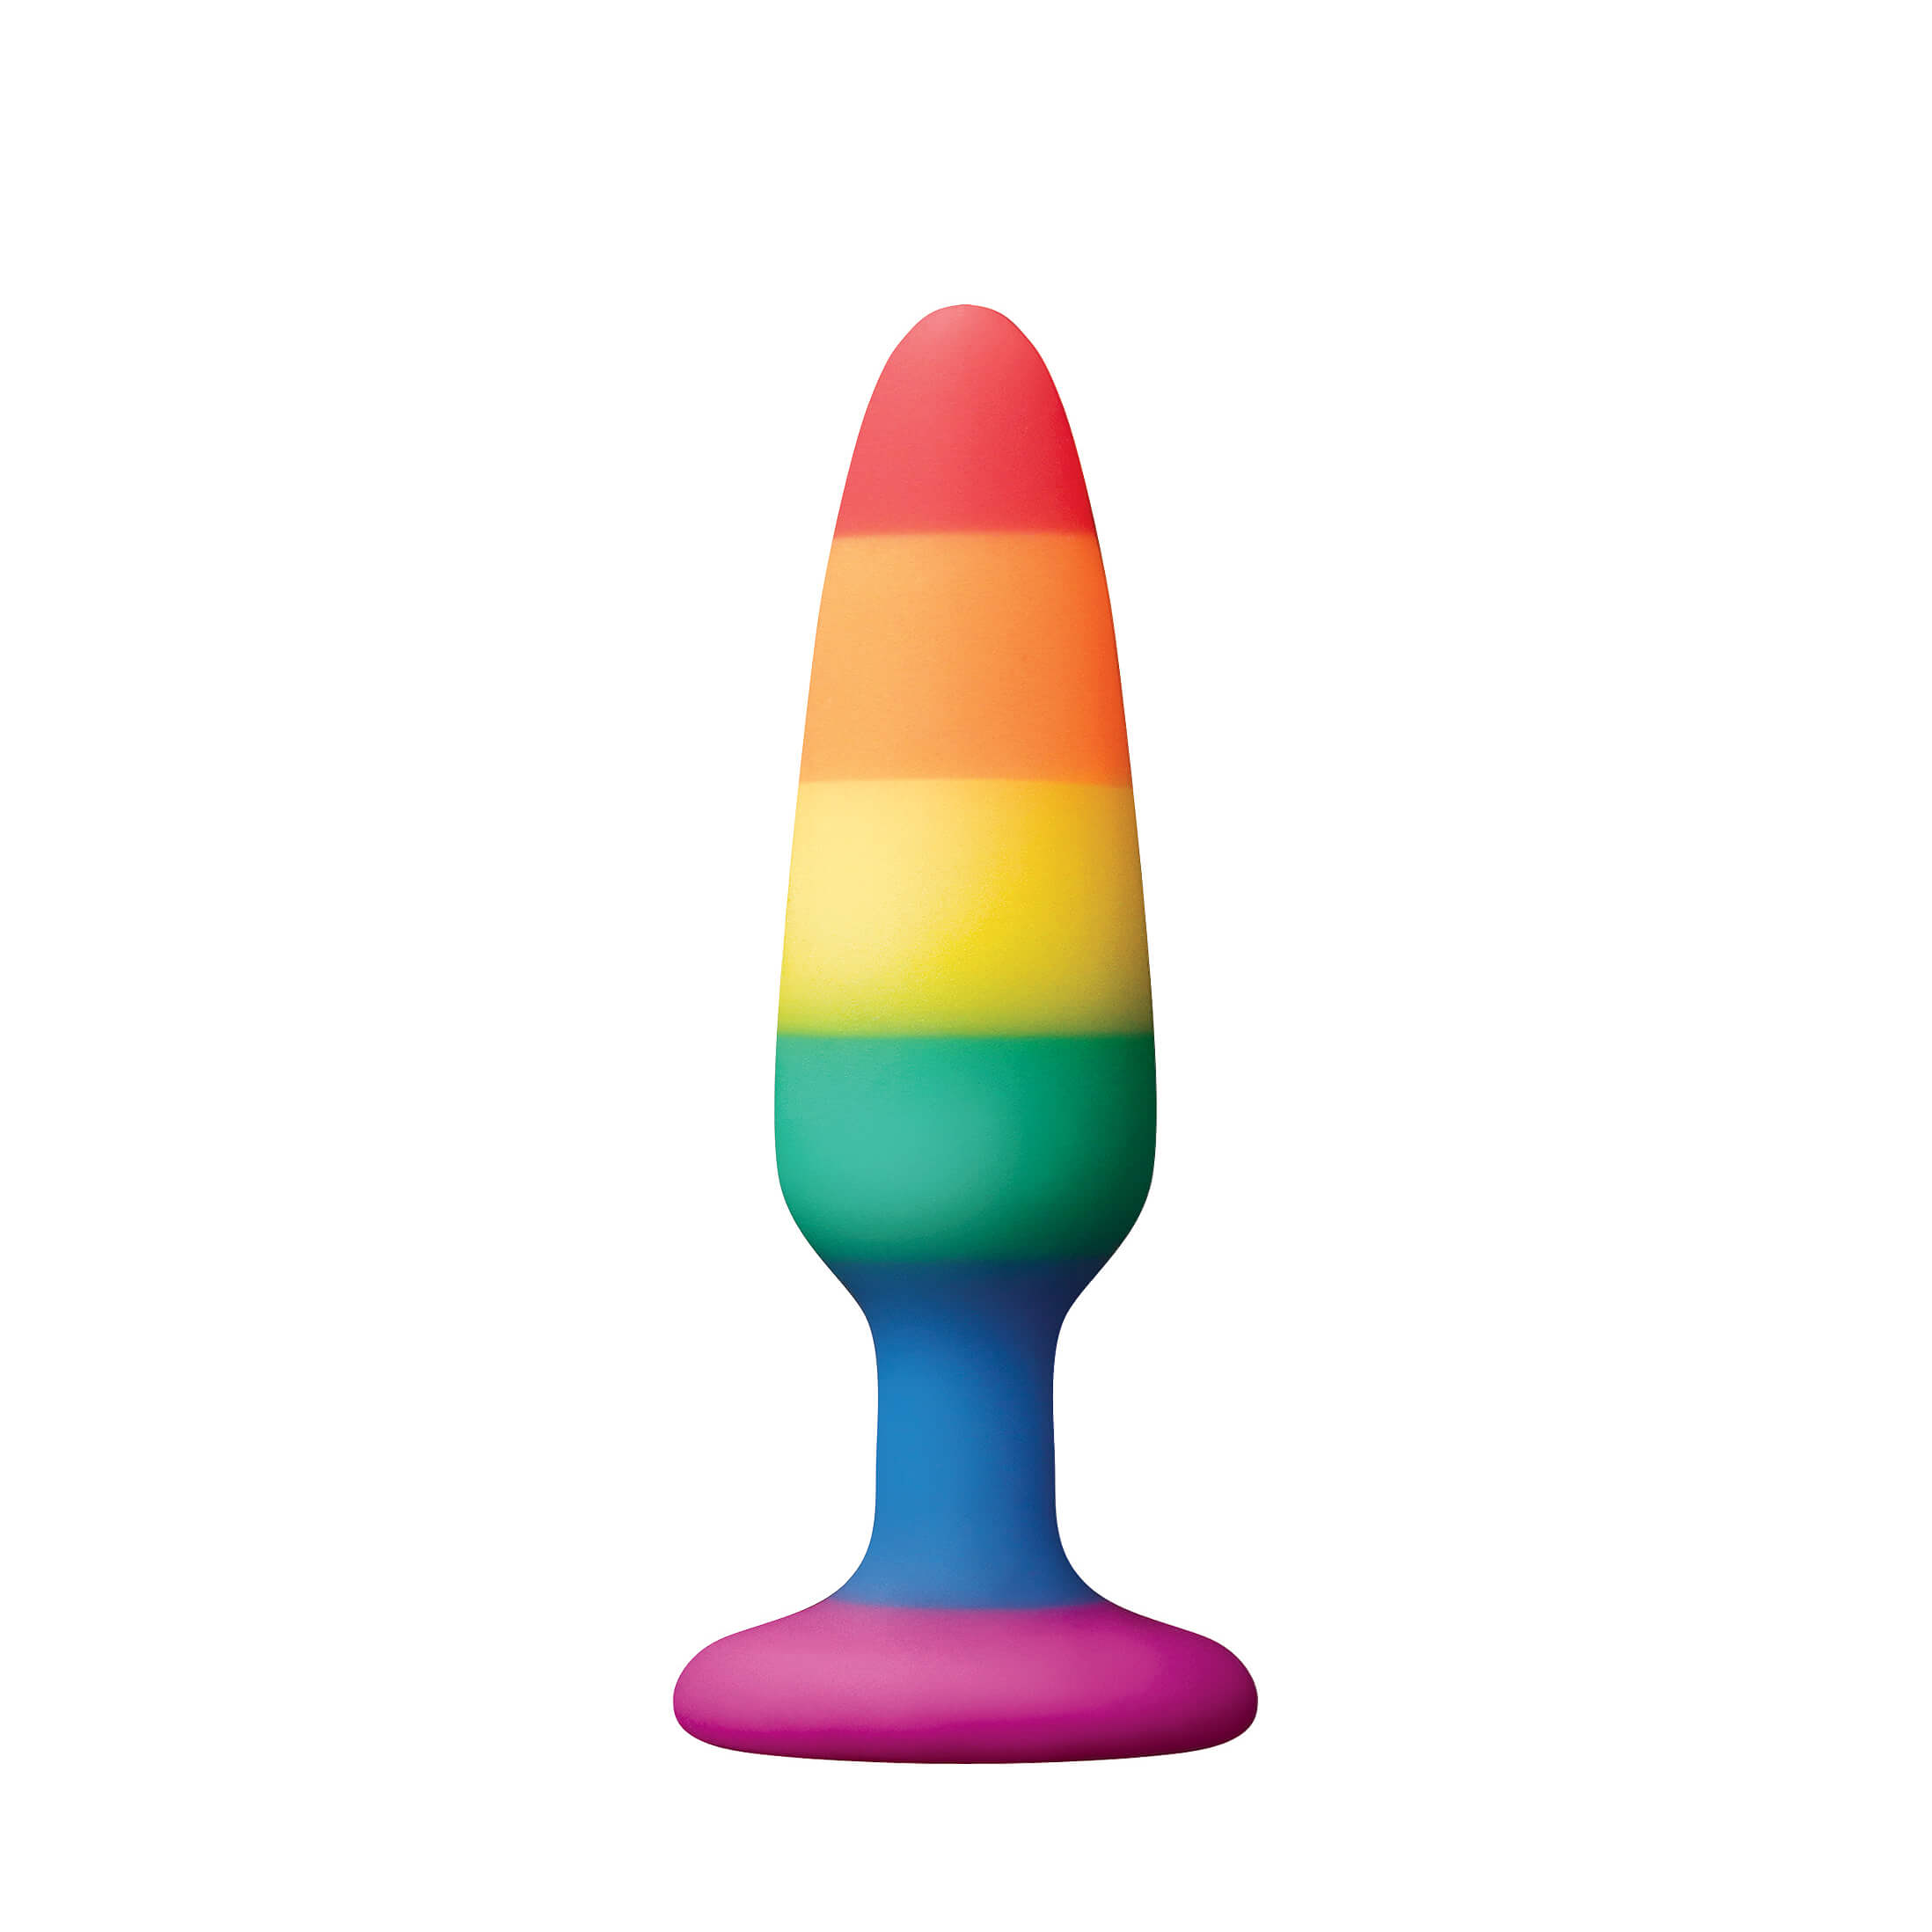 Dúhový análny kolíček NS Toys Colours Pride Edition Pleasure Plug Small Rainbow 10 x 2,5 cm